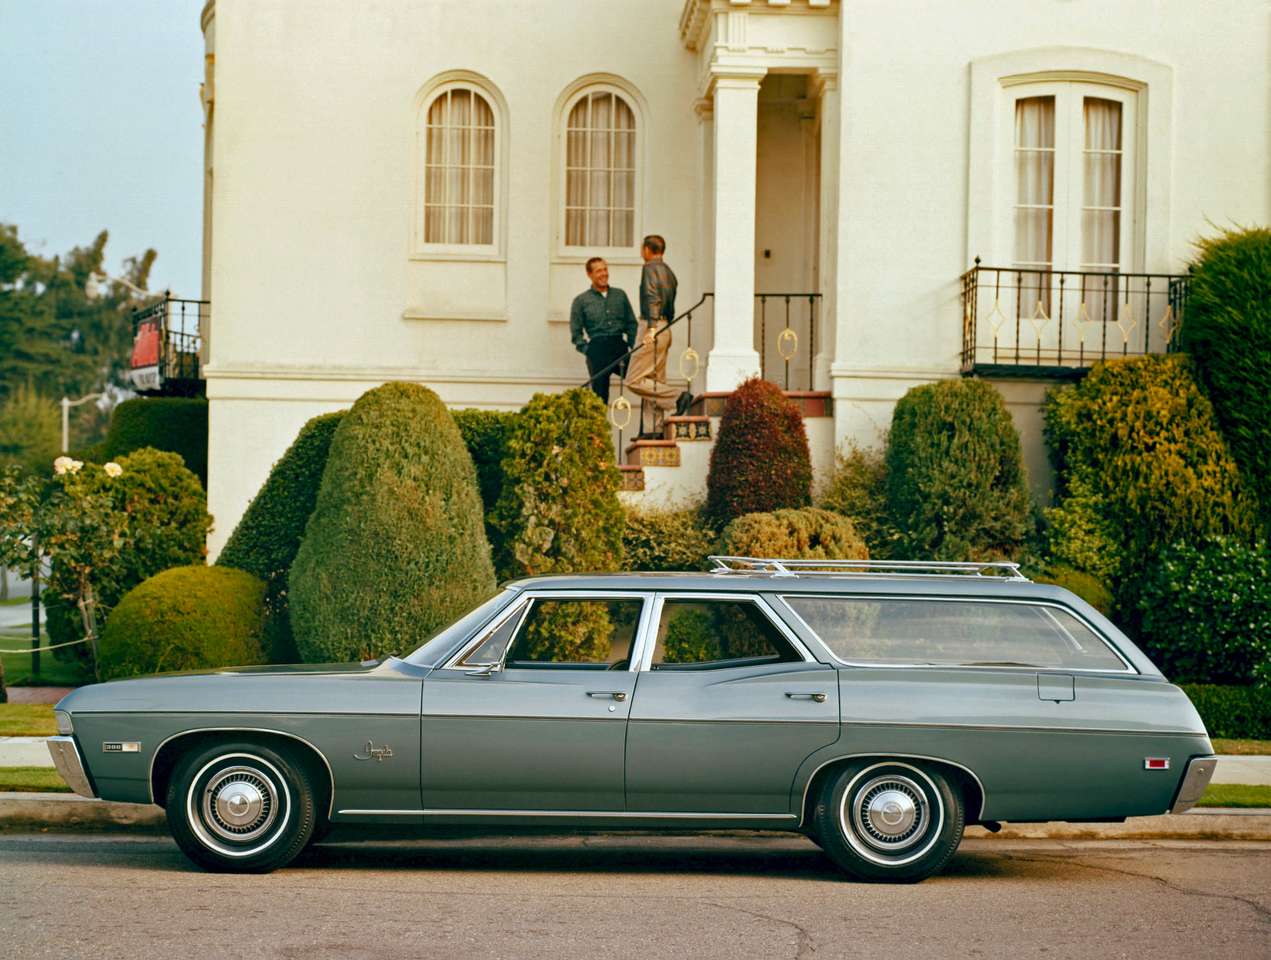 1968 Chevrolet Impala Station Wagon quebra-cabeças online